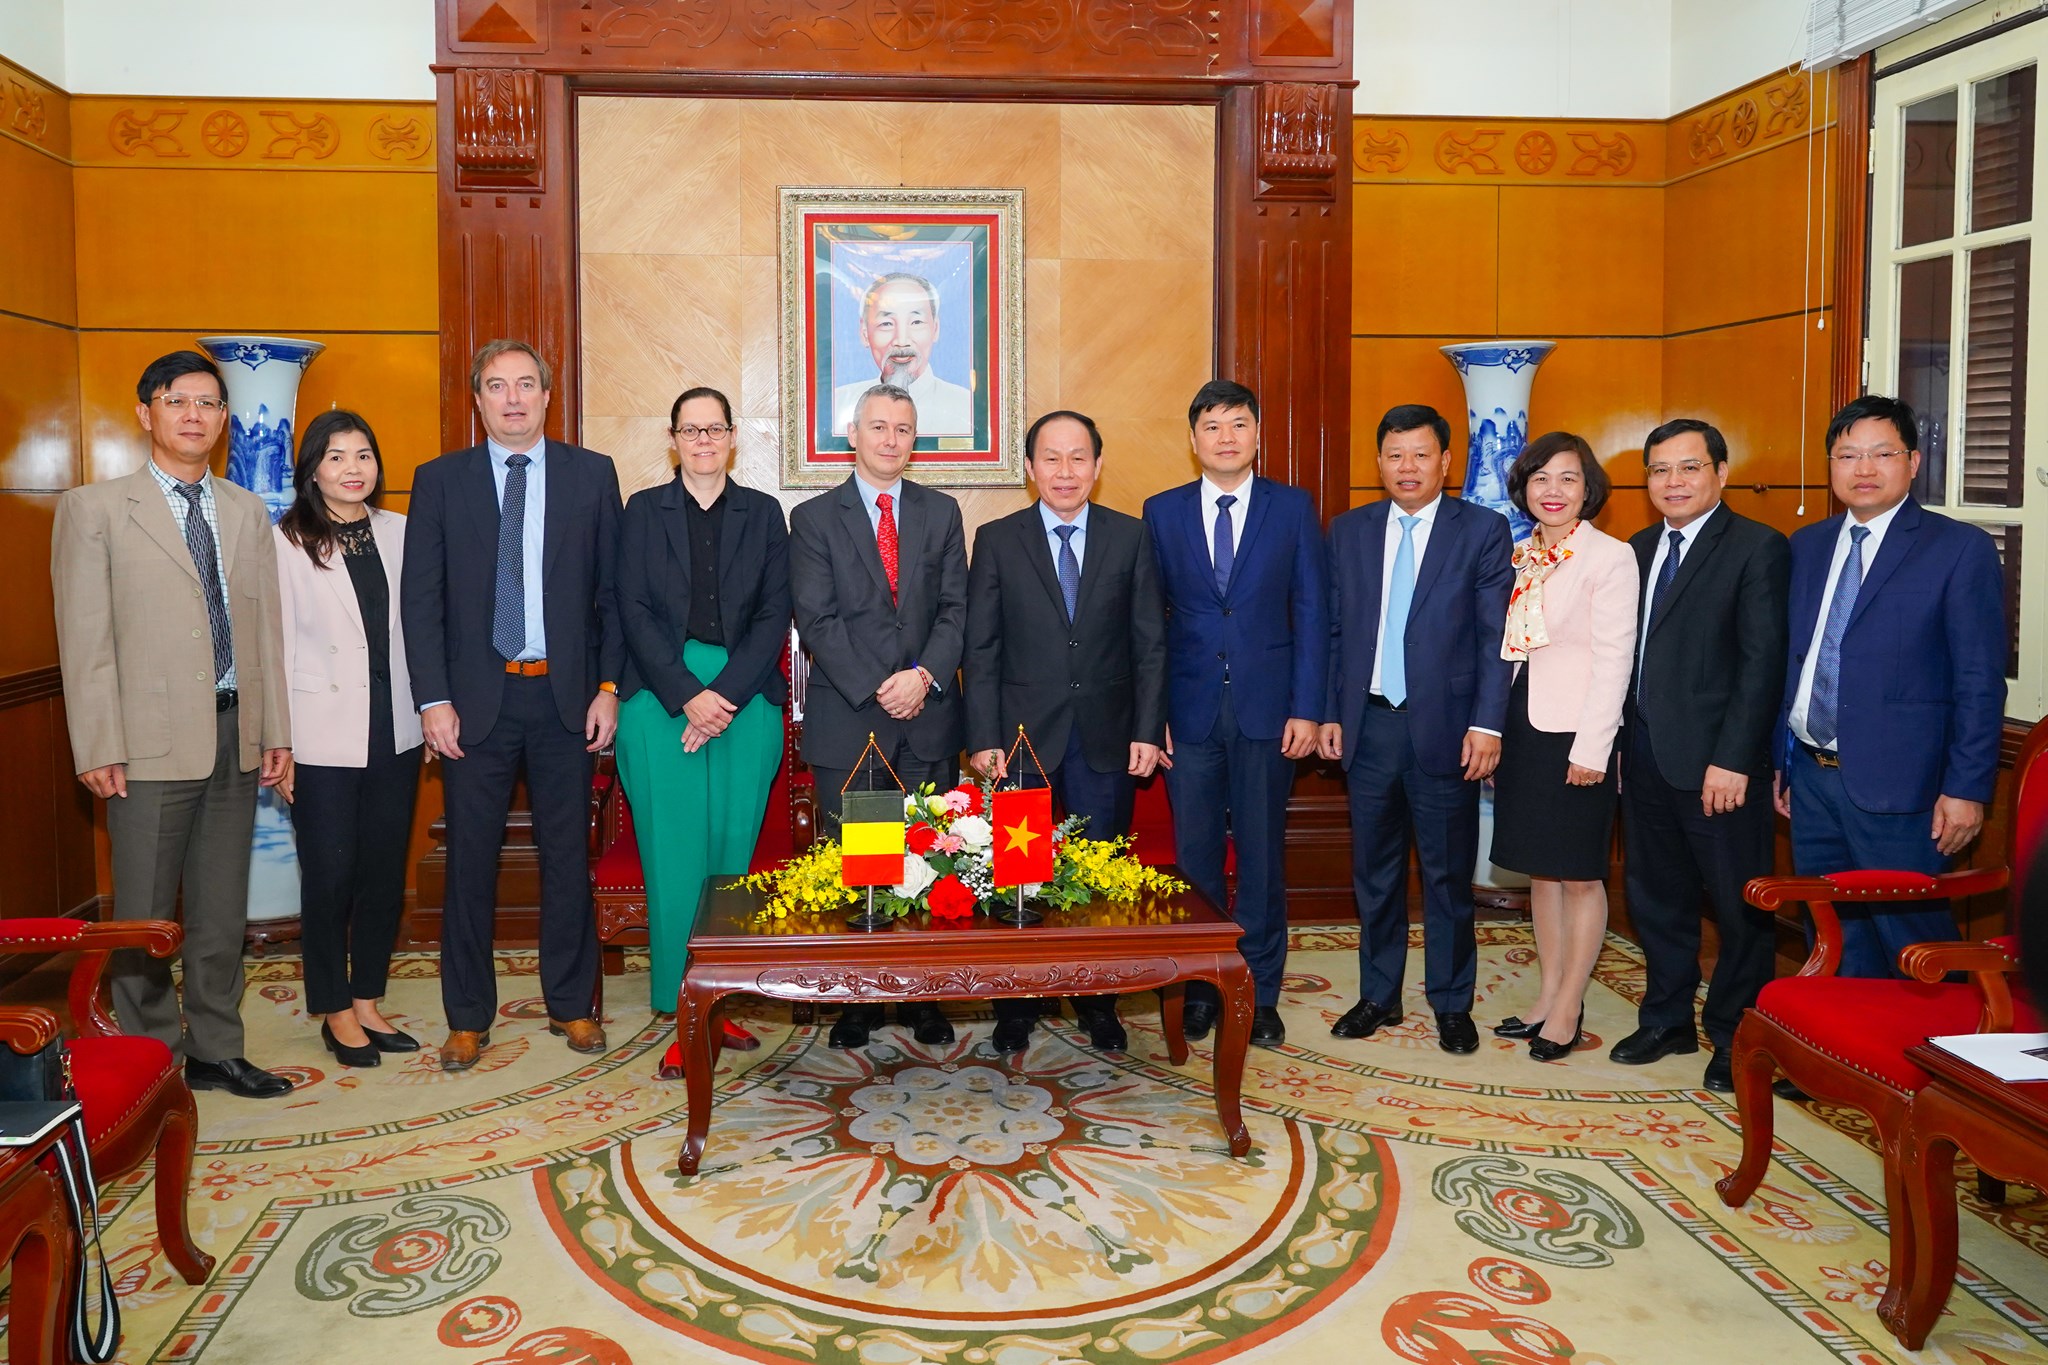 Đoàn công tác Đại sứ quán Vương quốc Bỉ tại Việt Nam và lãnh đạo thành phố Hải Phòng chụp ảnh lưu niệm. Ảnh: Đàm Thanh